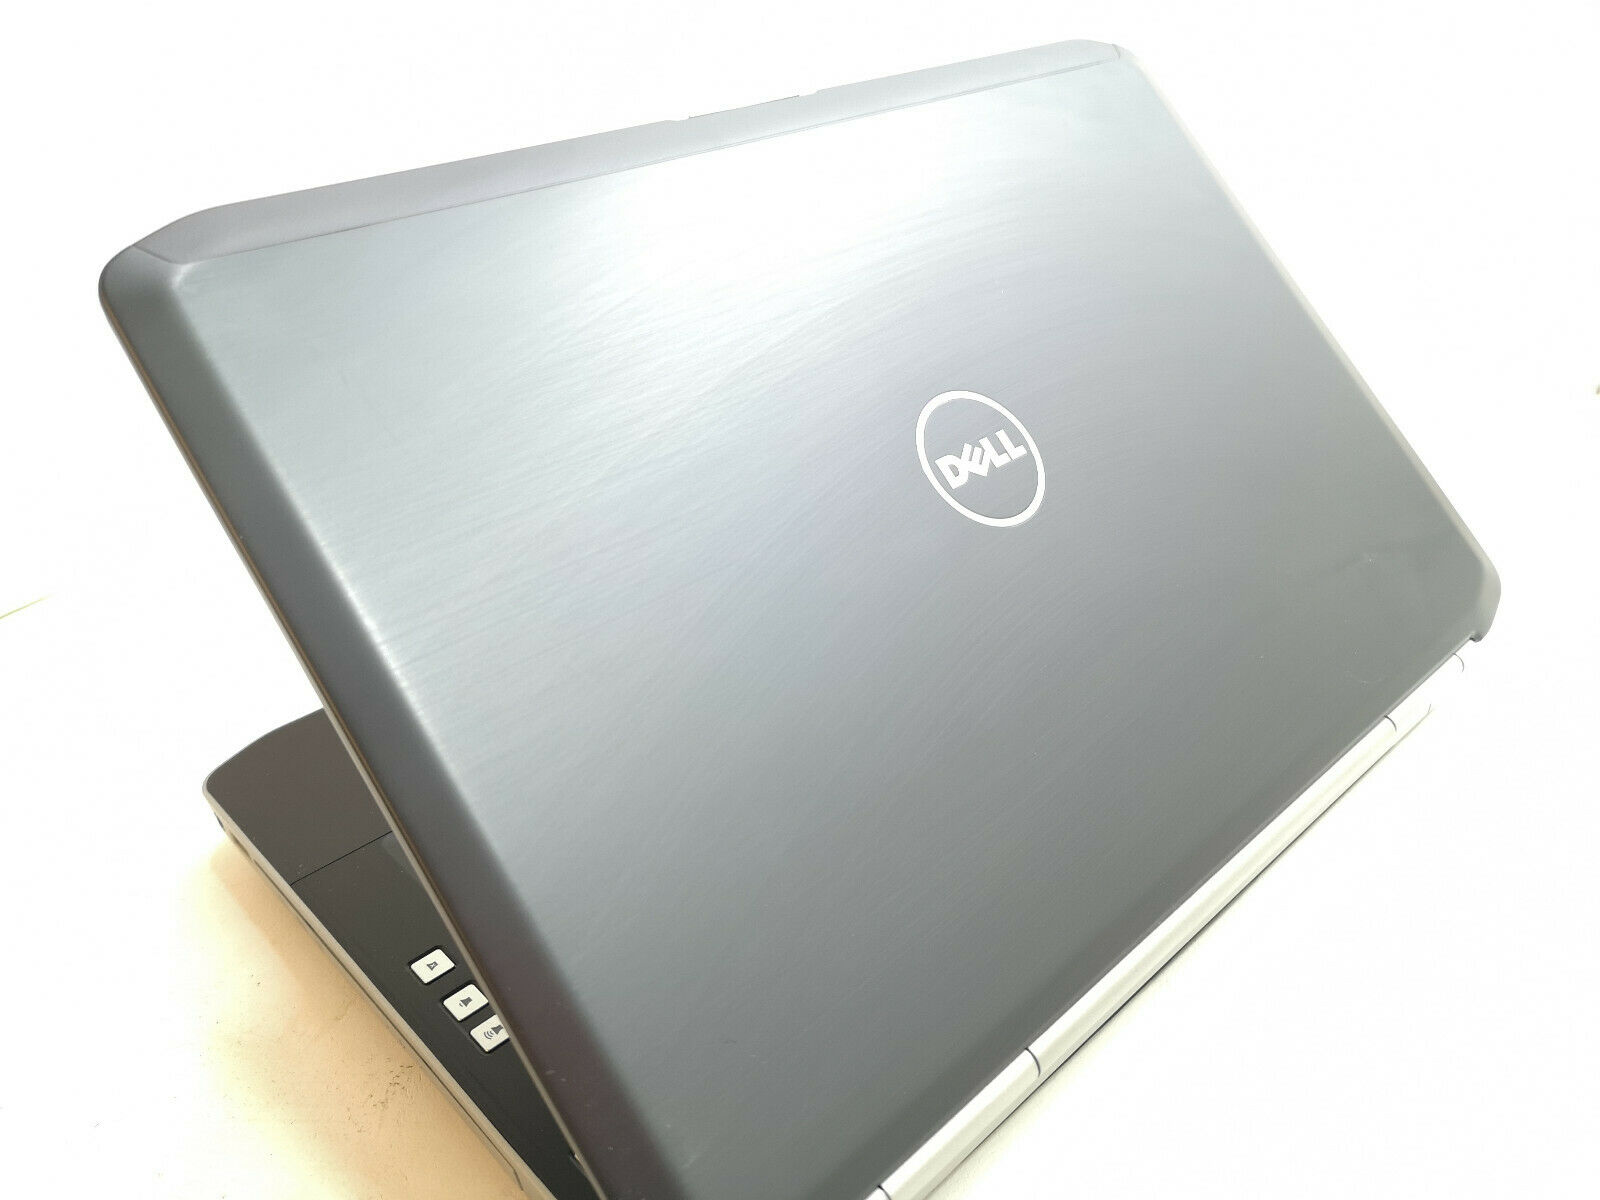 Refurbished Dell Latitude E5420 Laptop PC